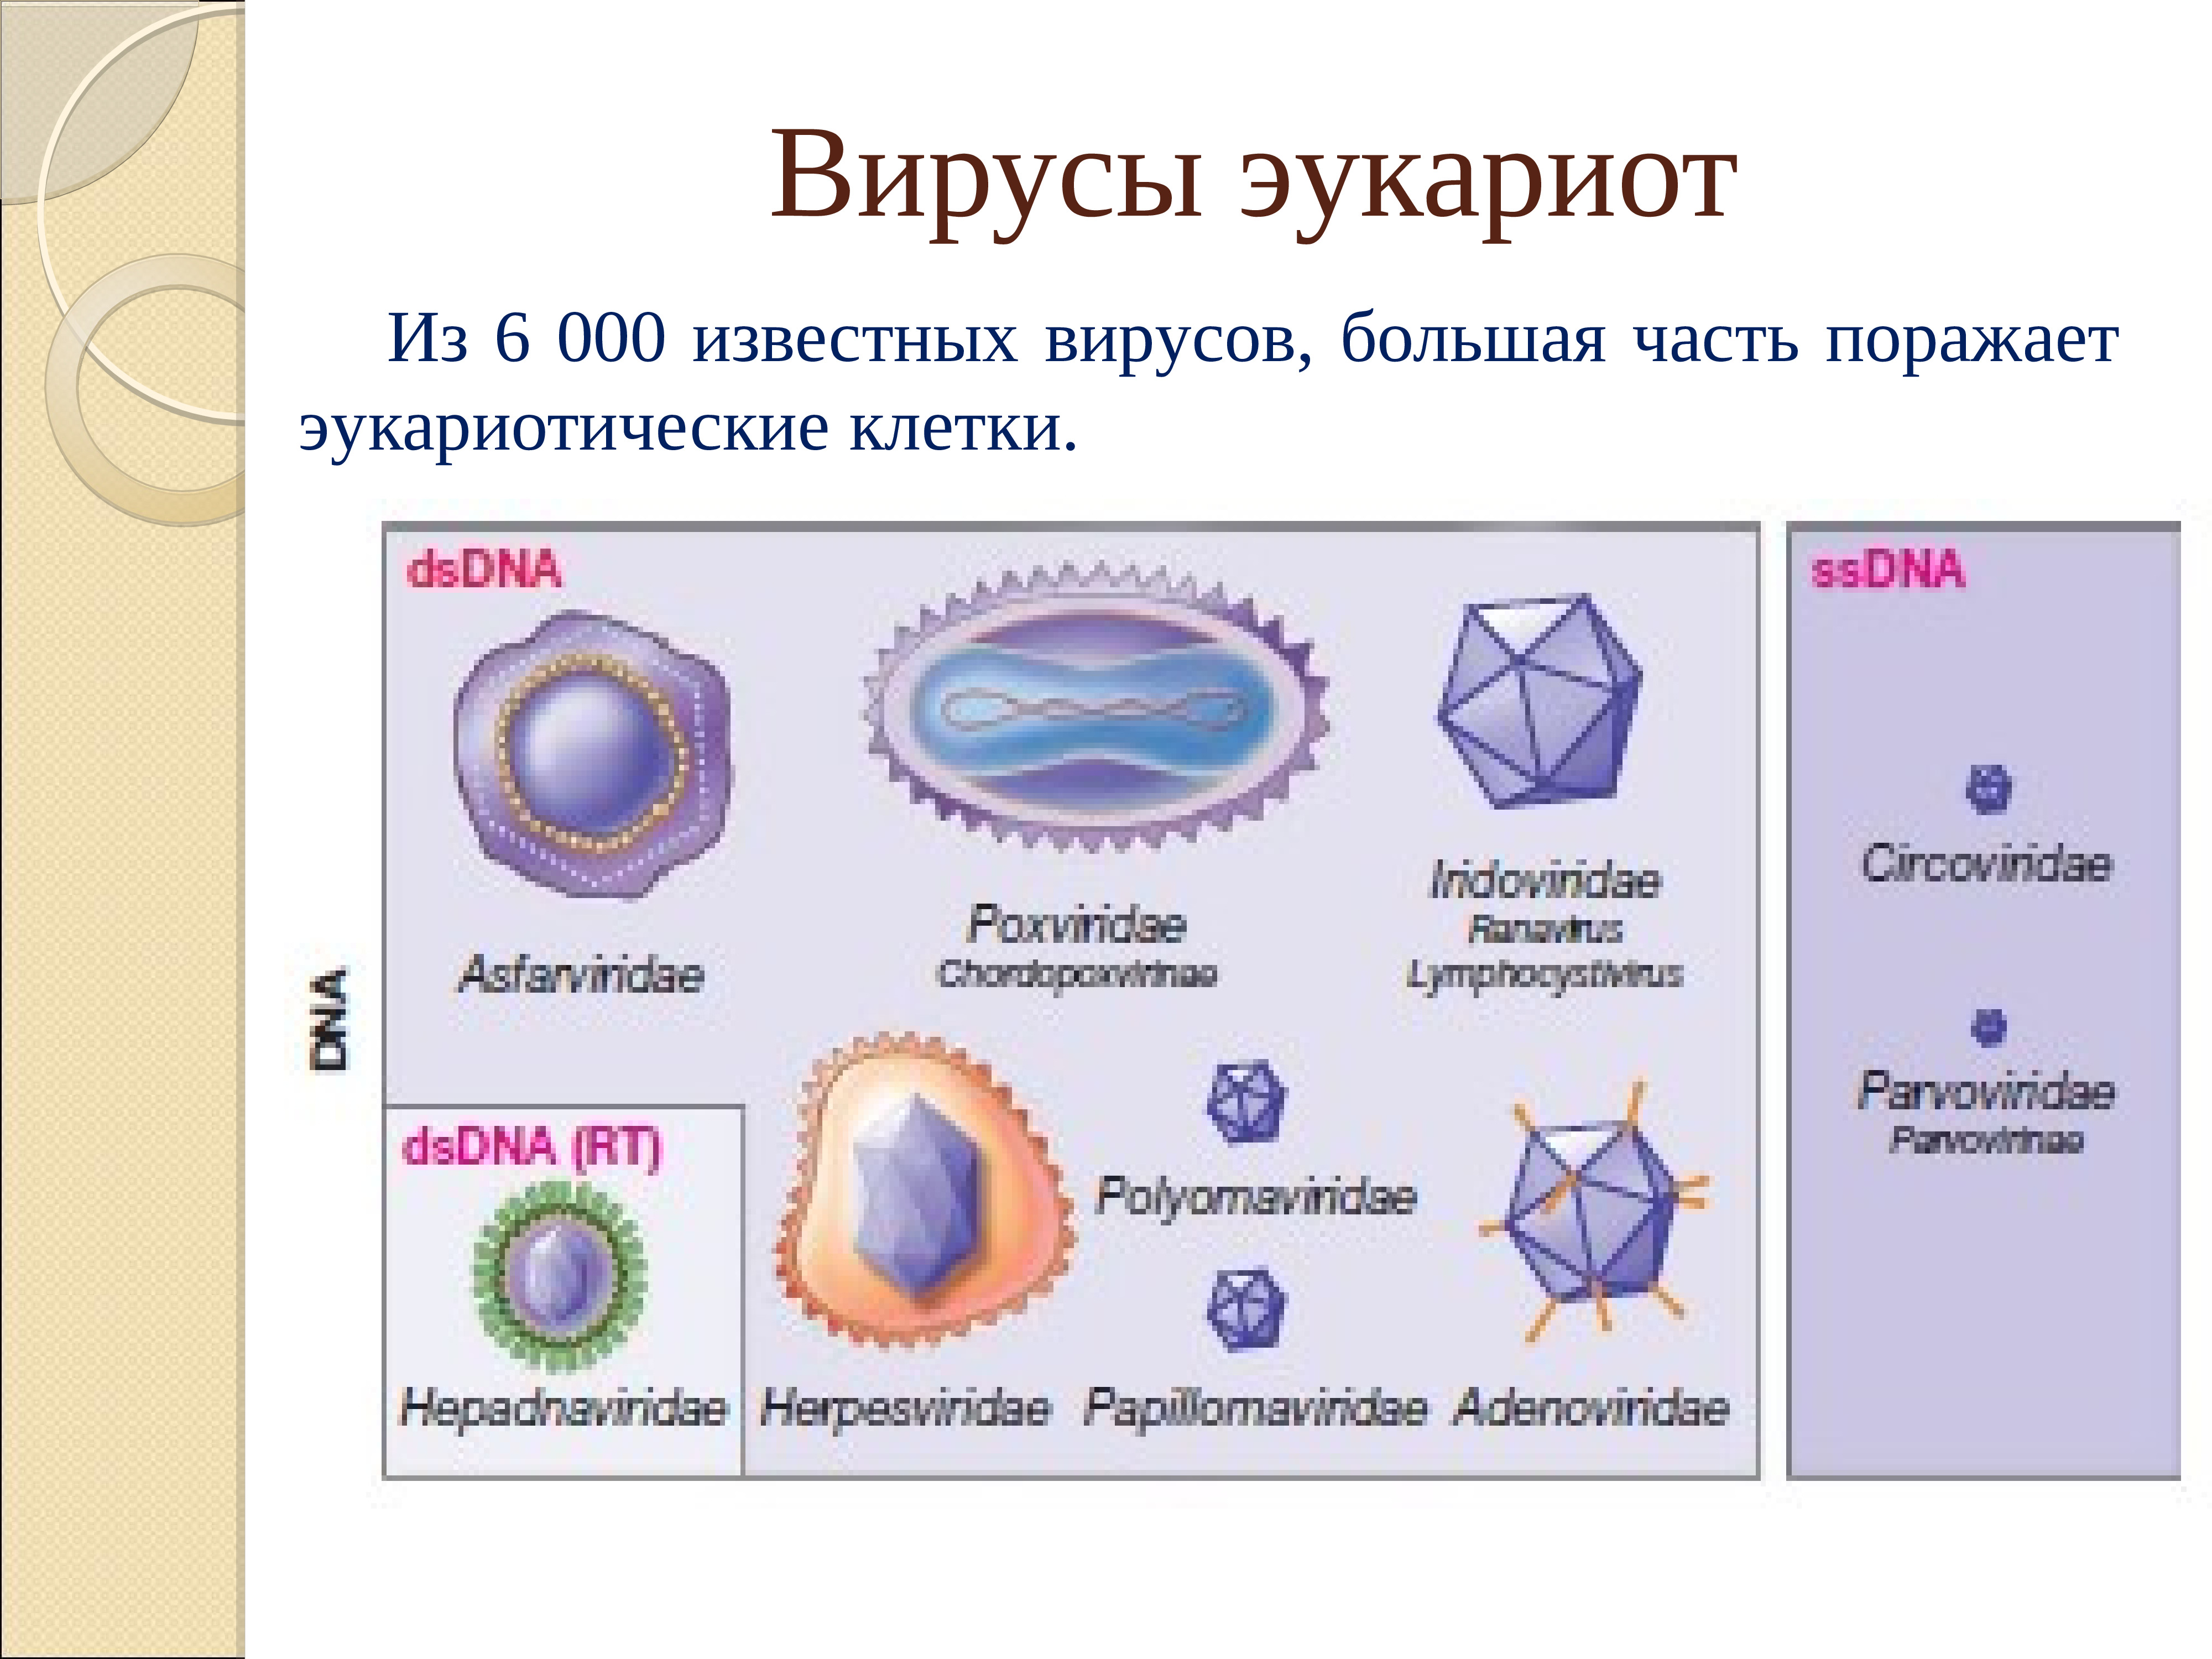 Вирусы это прокариоты. Вирусы эукариоты. Прокариоты эукариоты вирусы. К эукариотам относятся вирусы. Вирусы эукариот или прокариот.